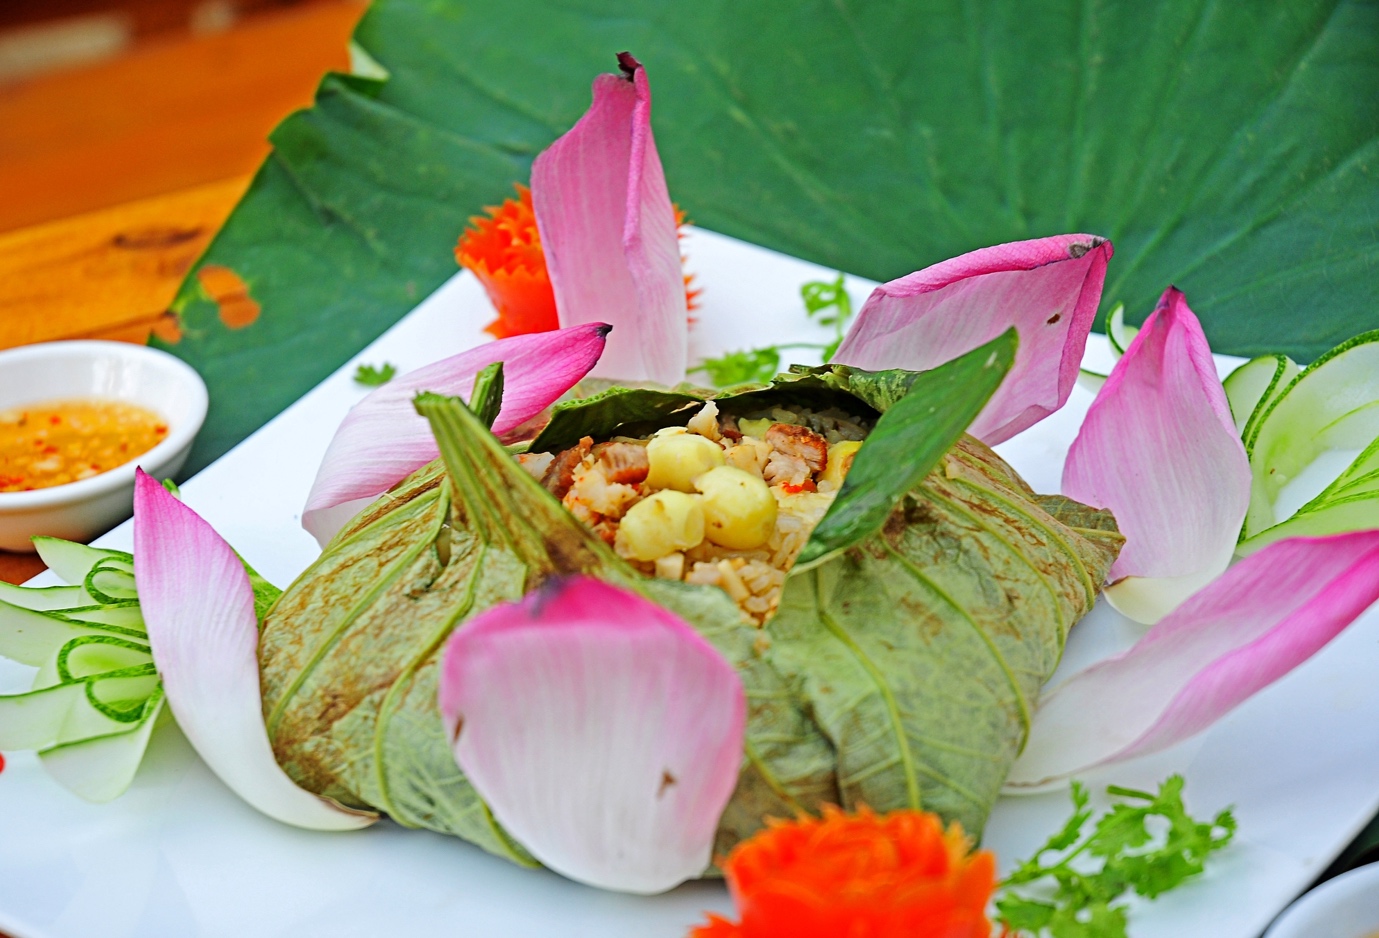 Cơm sen đã và đang góp phần mang ẩm thực Việt vươn tầm văn hoá ẩm thực thế giới (Ảnh: Sưu tầm)